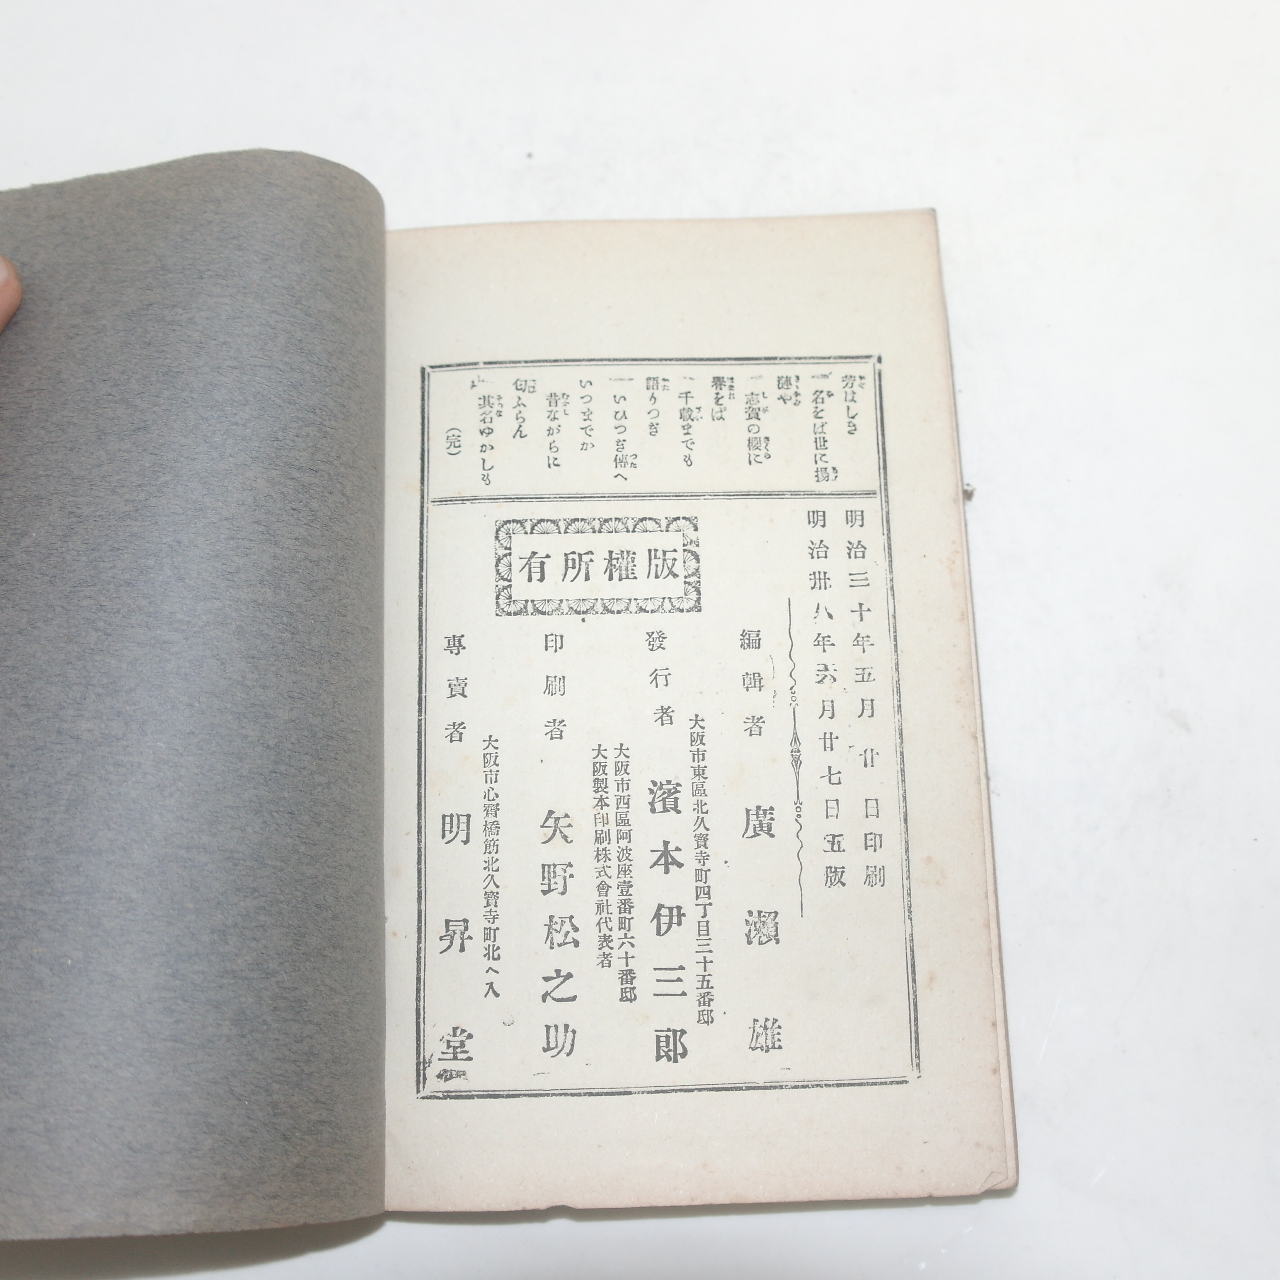 1905년(명치38년) 일본간행 보통교육 기사교과서(記事敎科書)